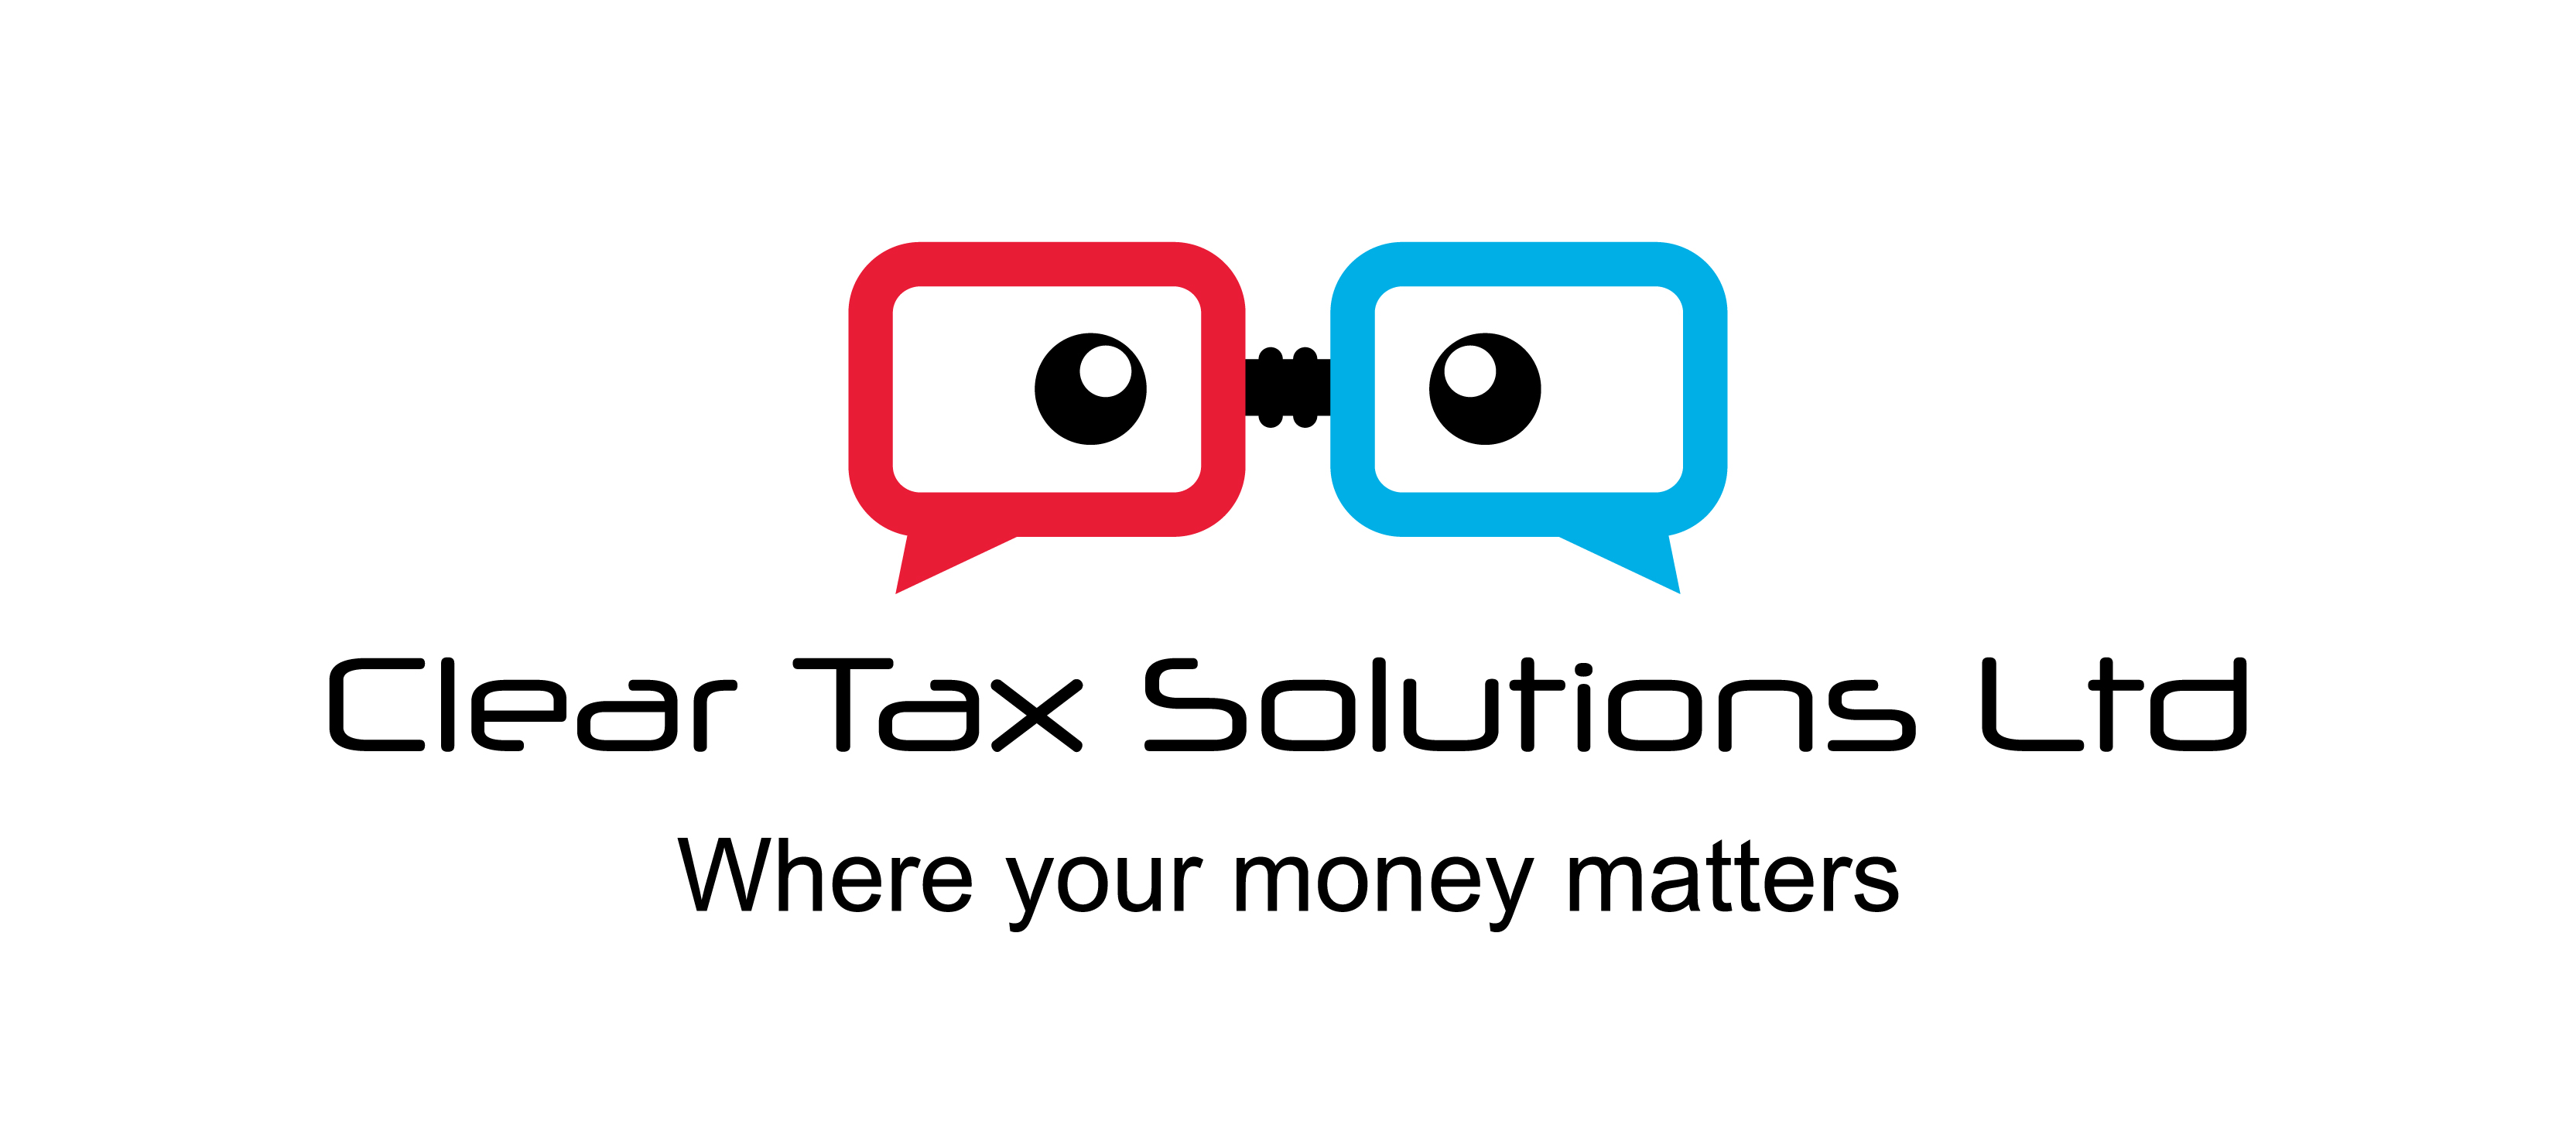 Clear Tax Solutions Ltd